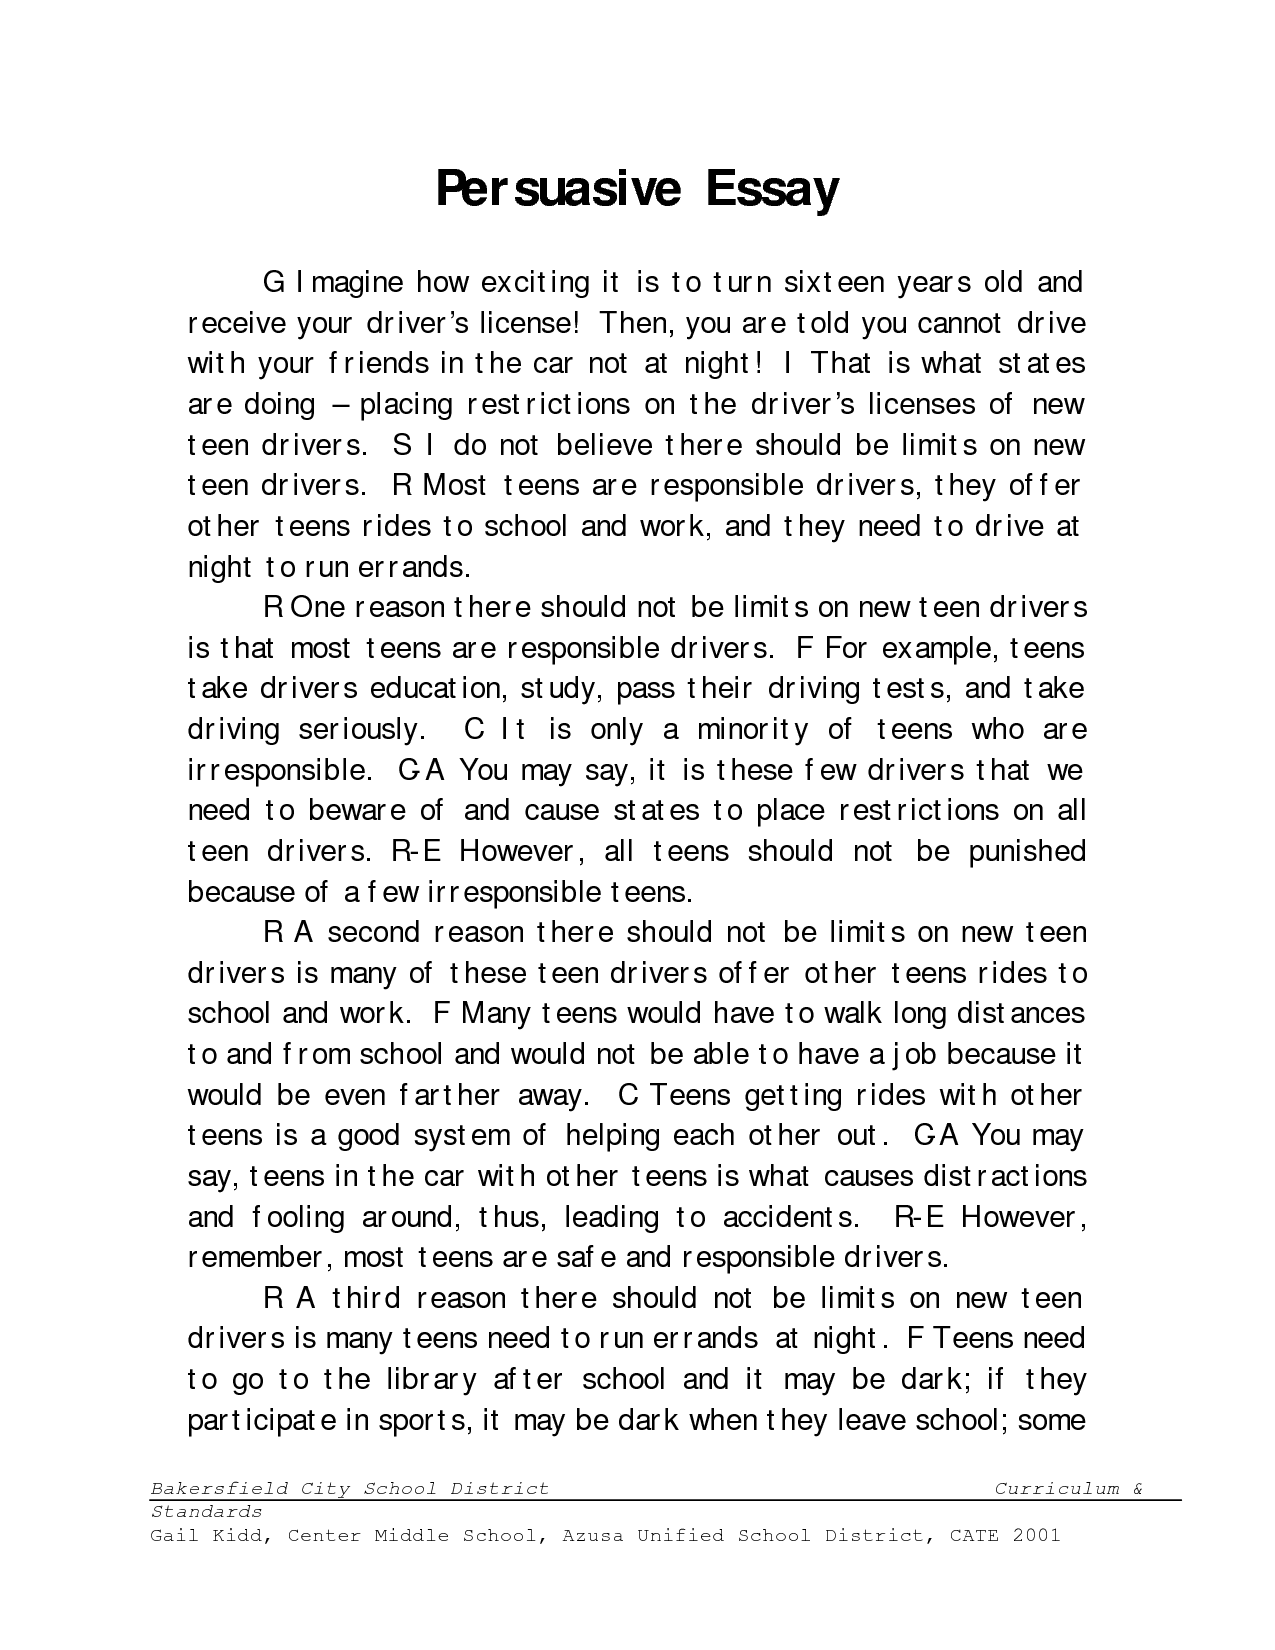 Persuasive essay example